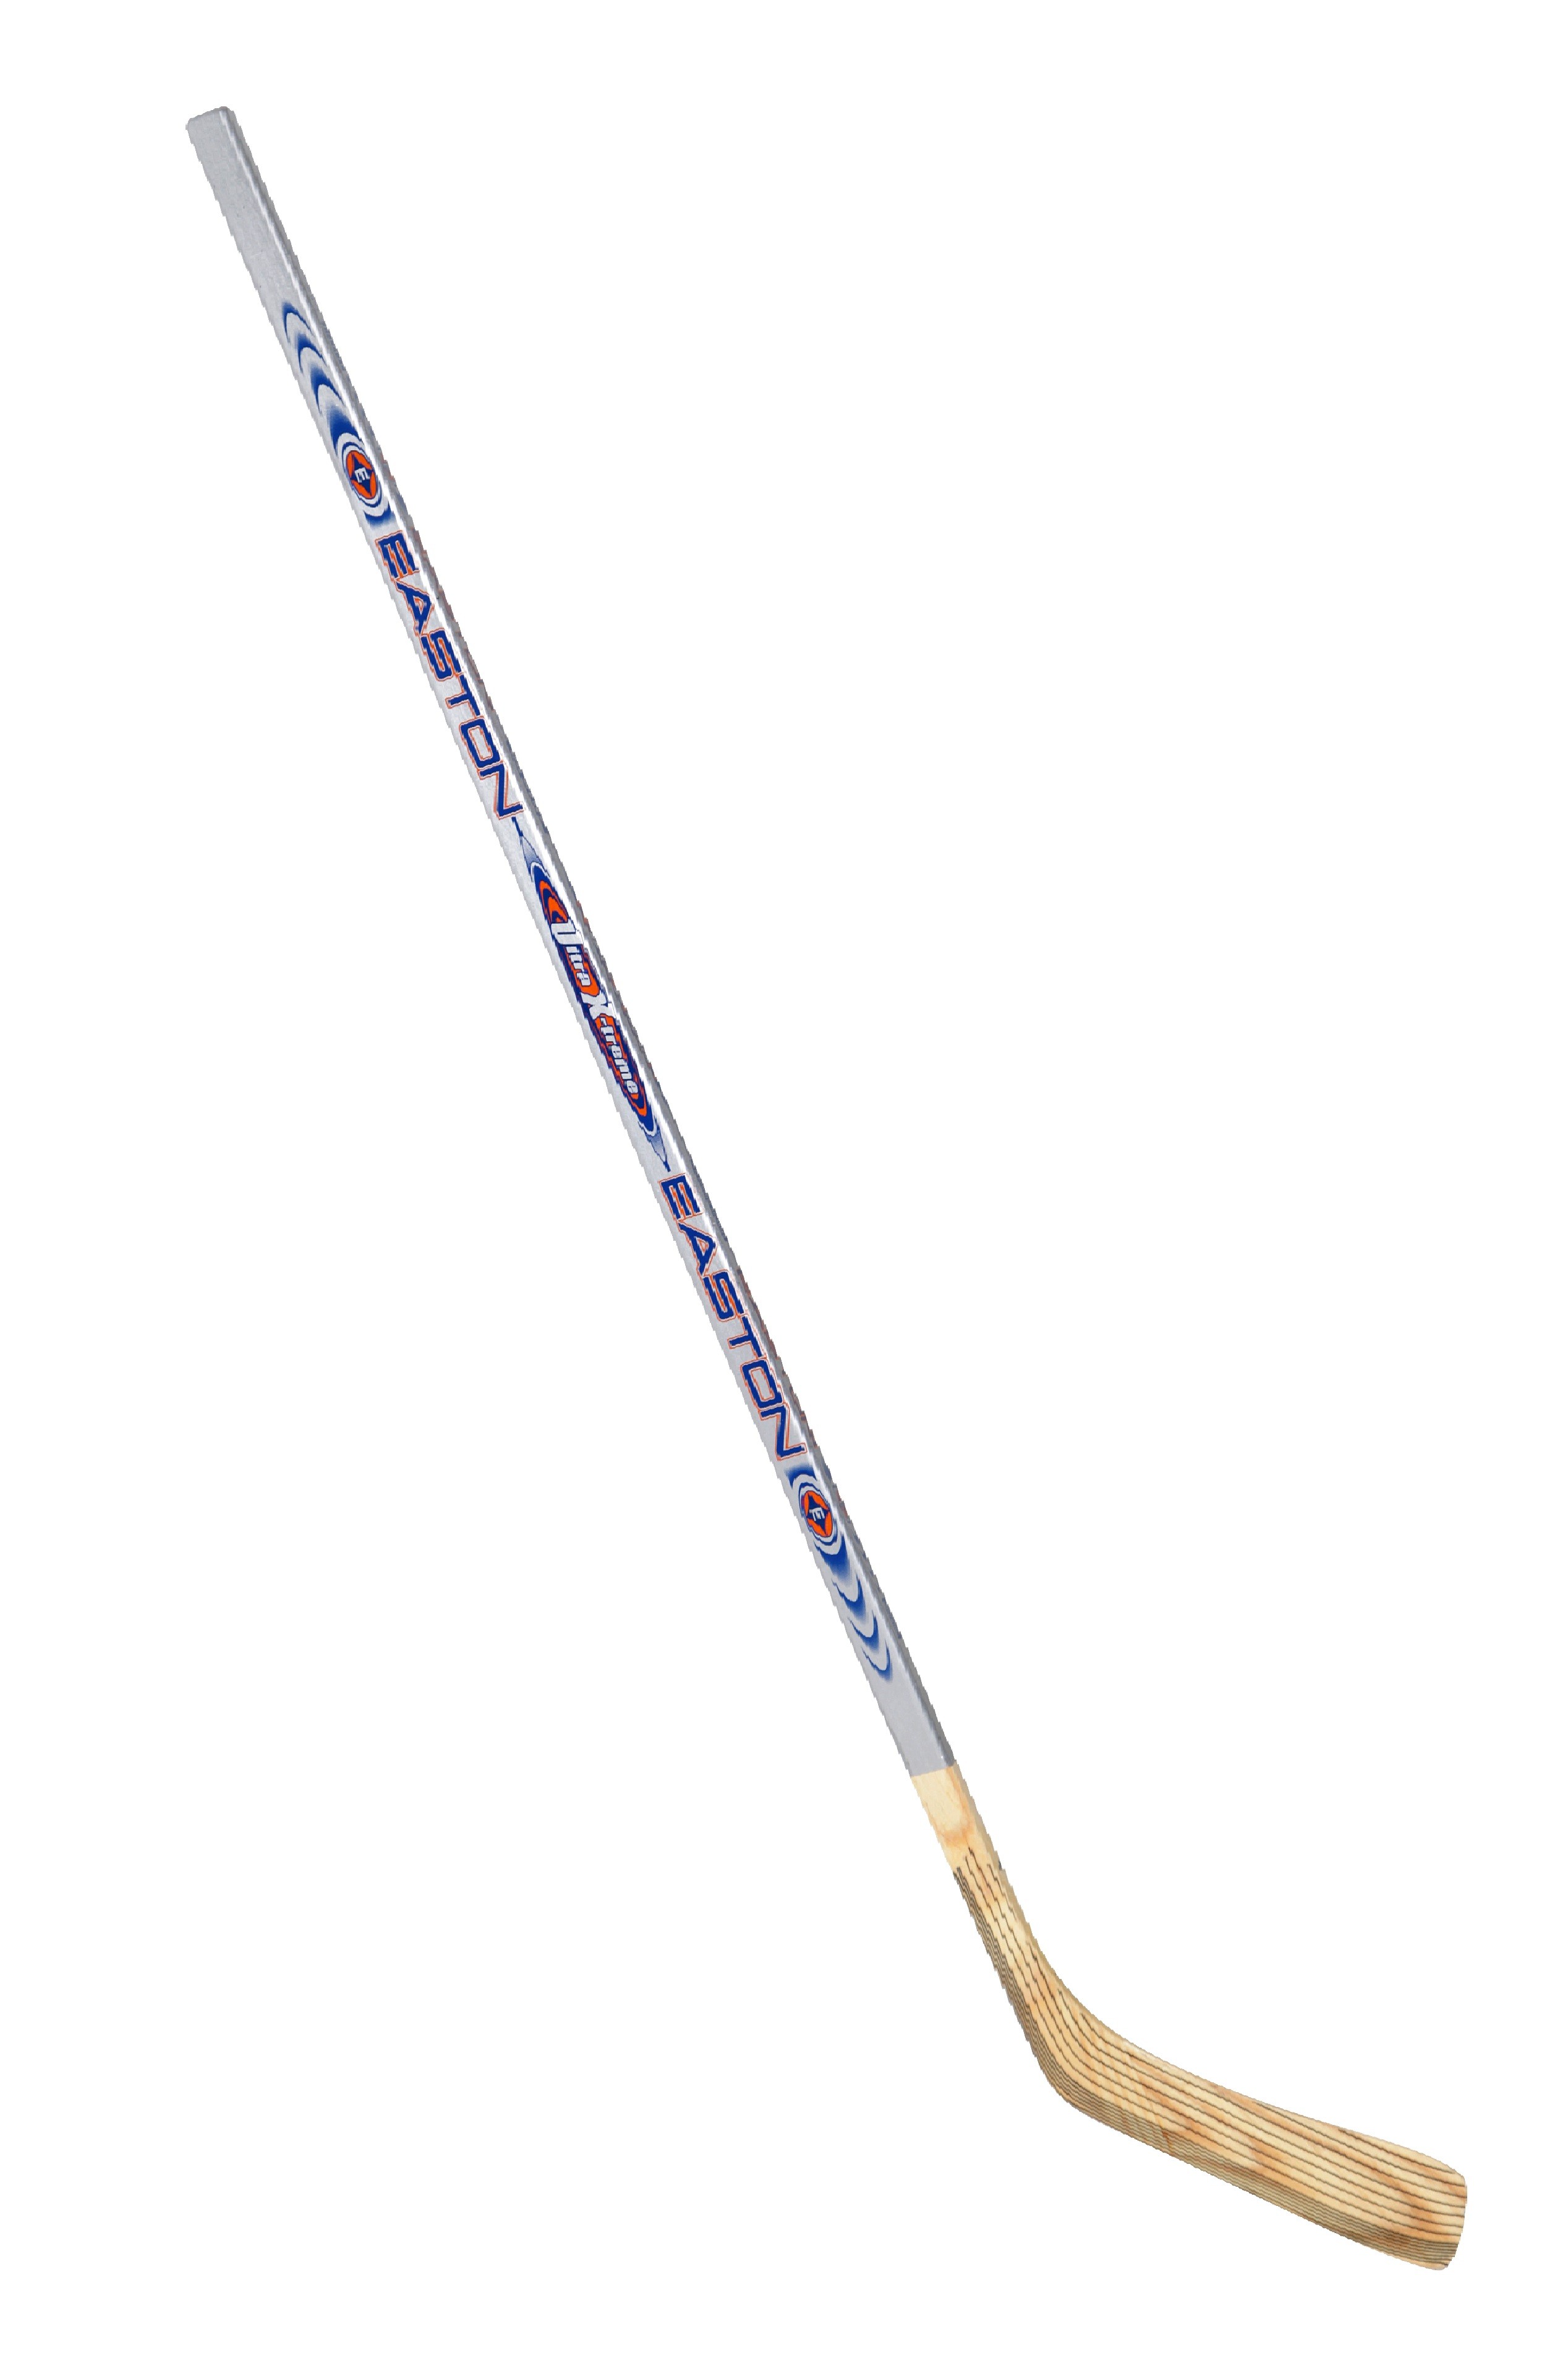 Easton Ultra X-treme Senior Wood Stick